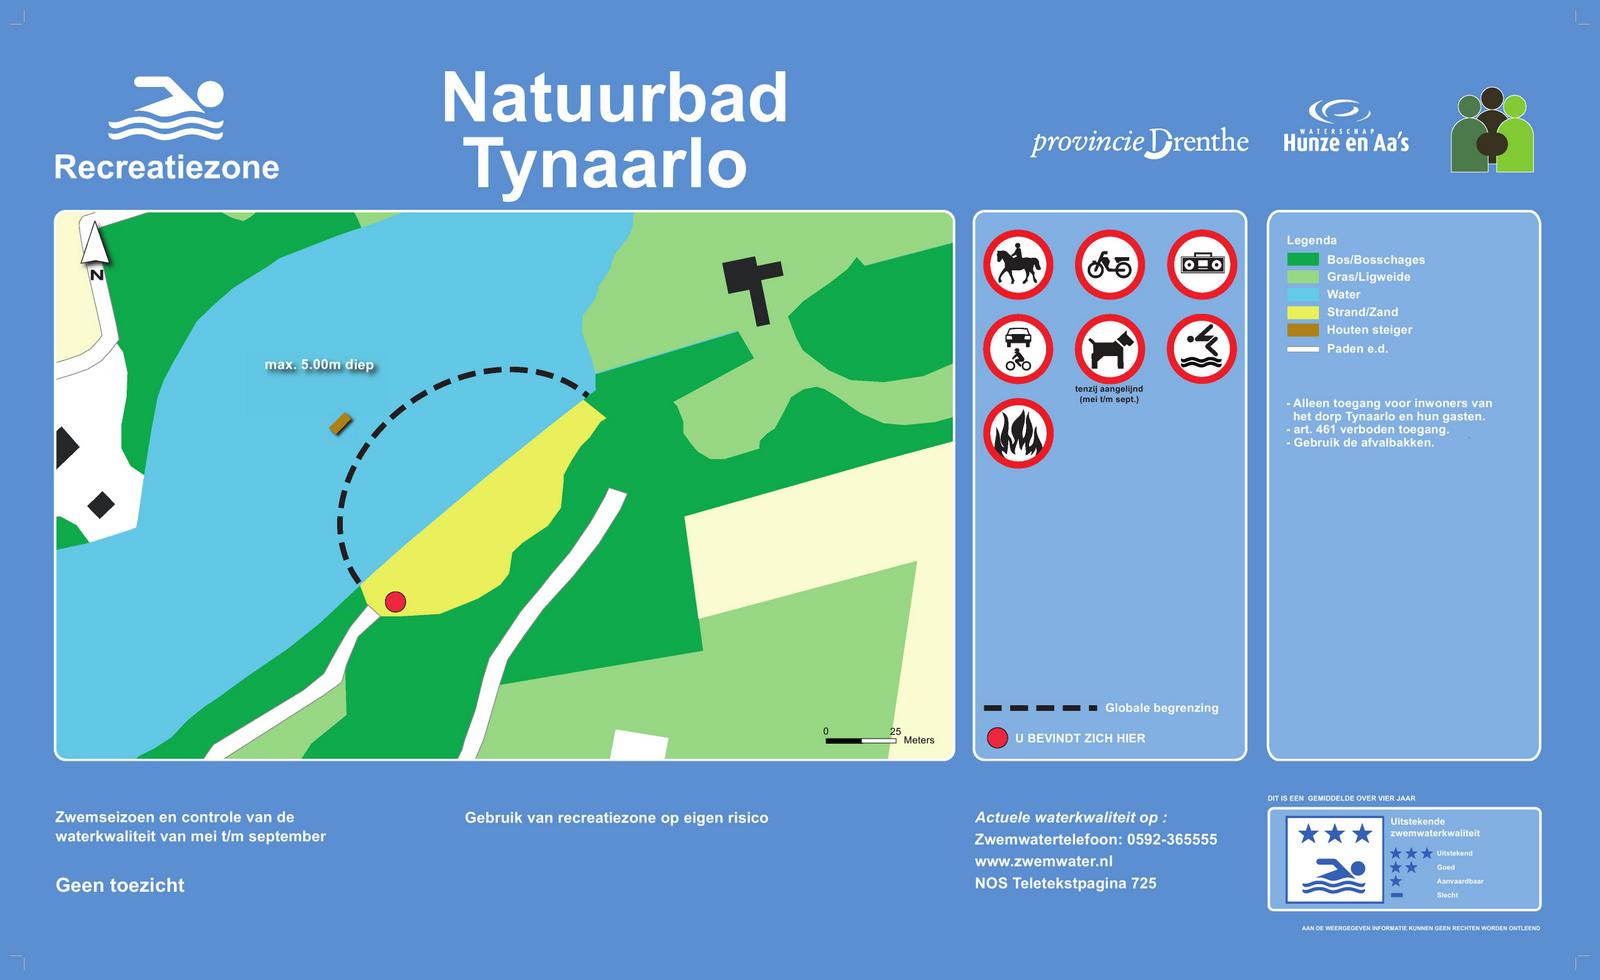 Het informatiebord bij zwemlocatie Natuurbad Tynaarlo